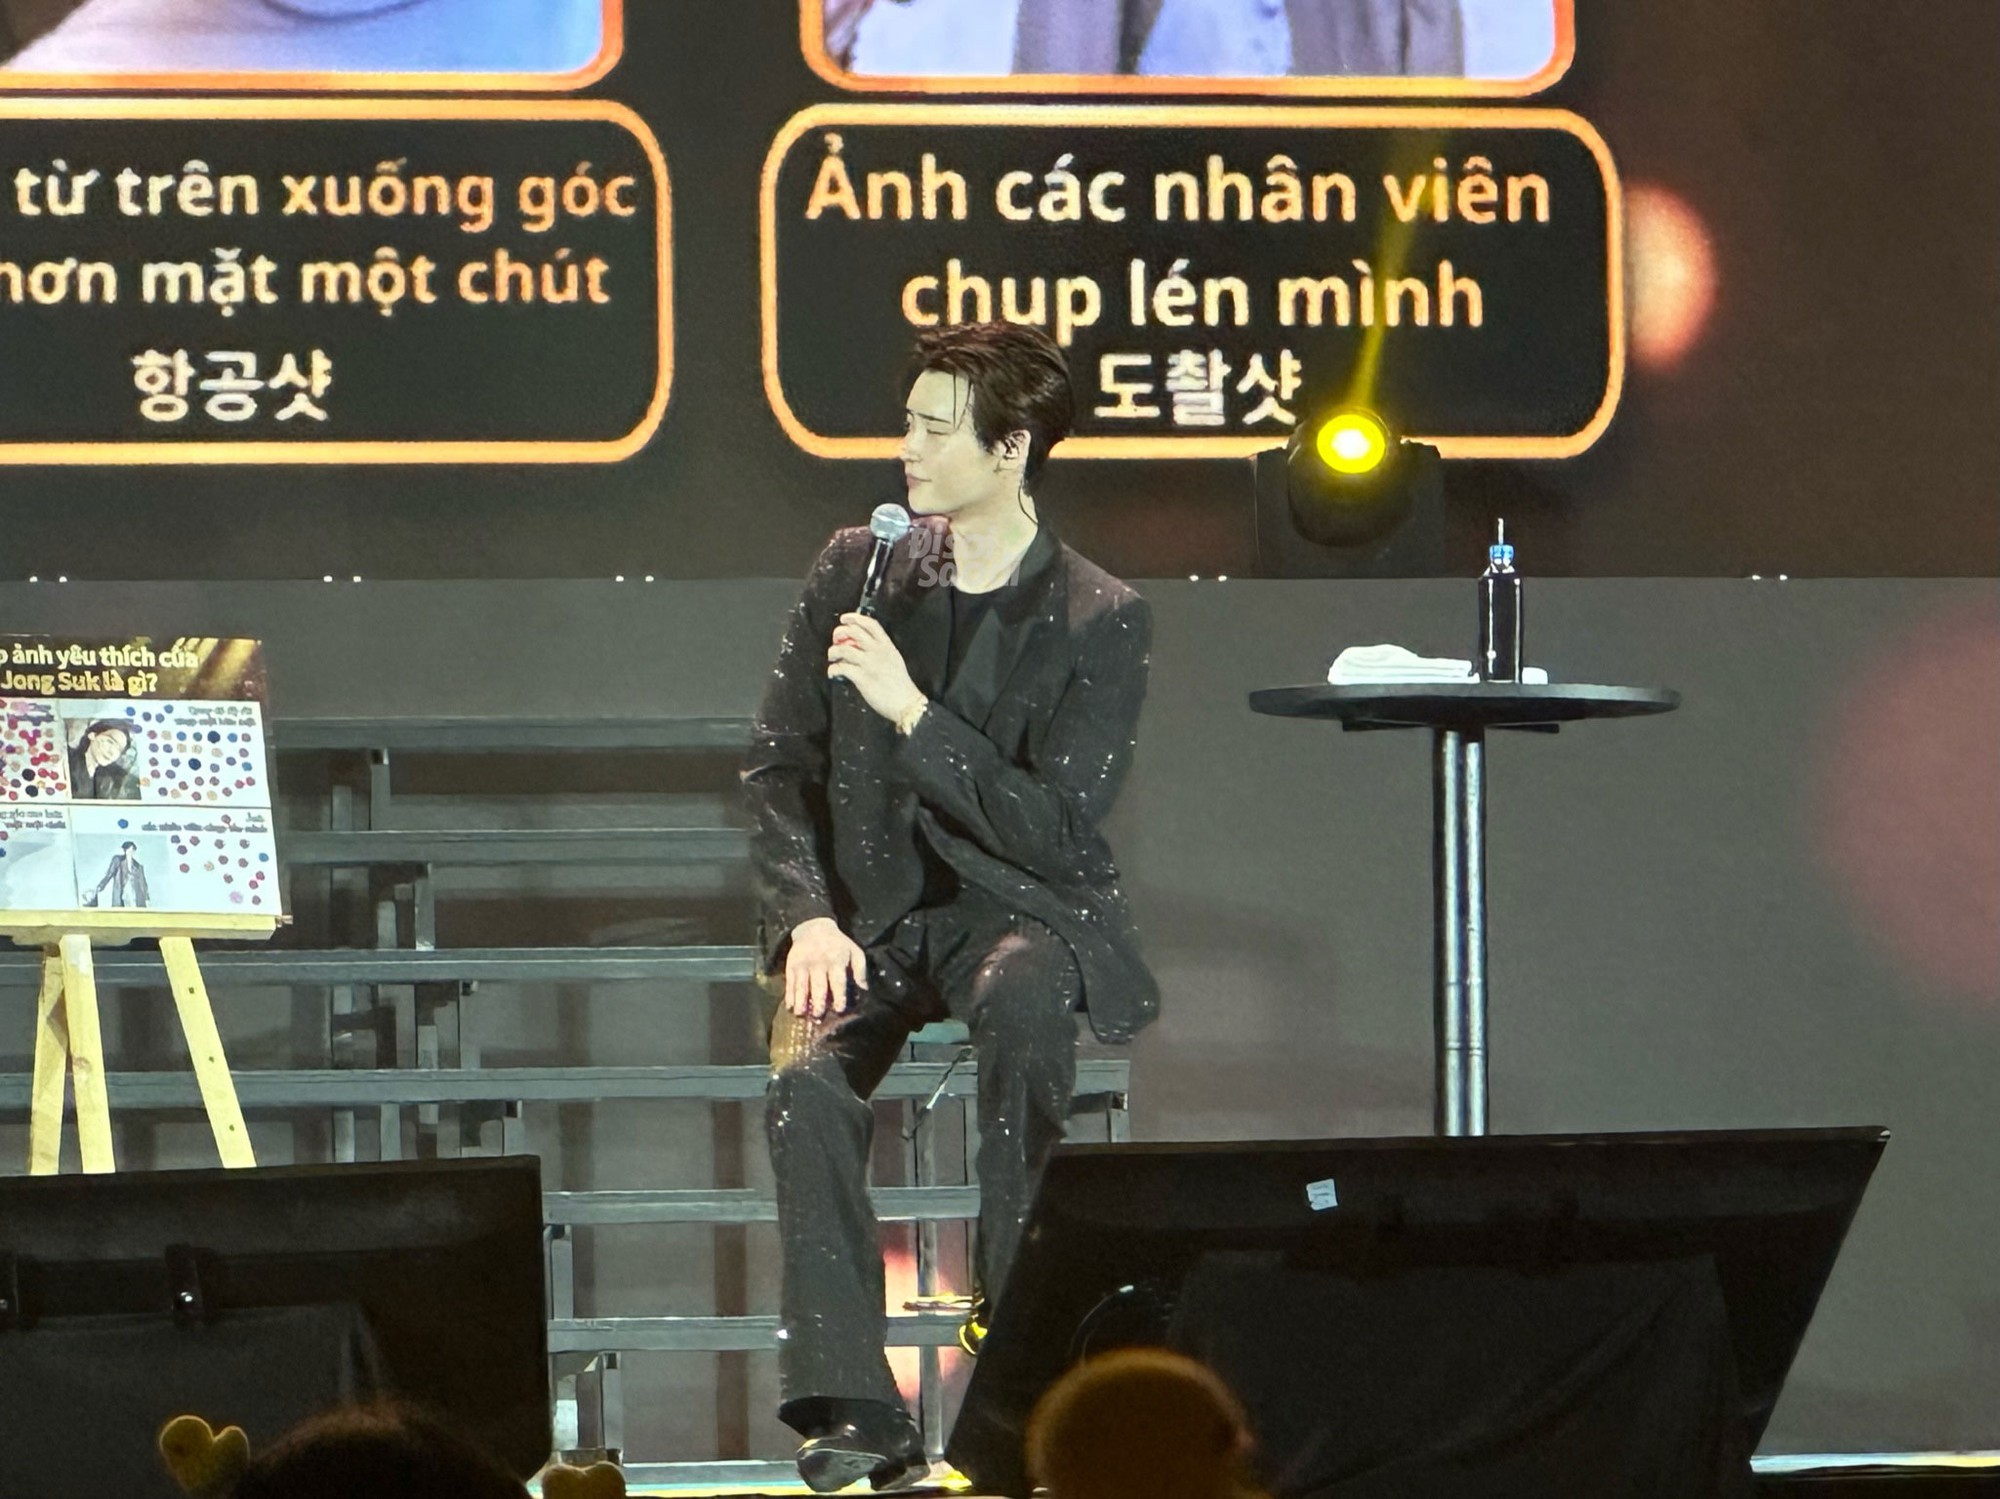 Soi cận cảnh nhan sắc Lee Jong Suk tại Việt Nam qua cam thường: Có gây &quot;sốc visual&quot; như lời đồn? - Ảnh 6.